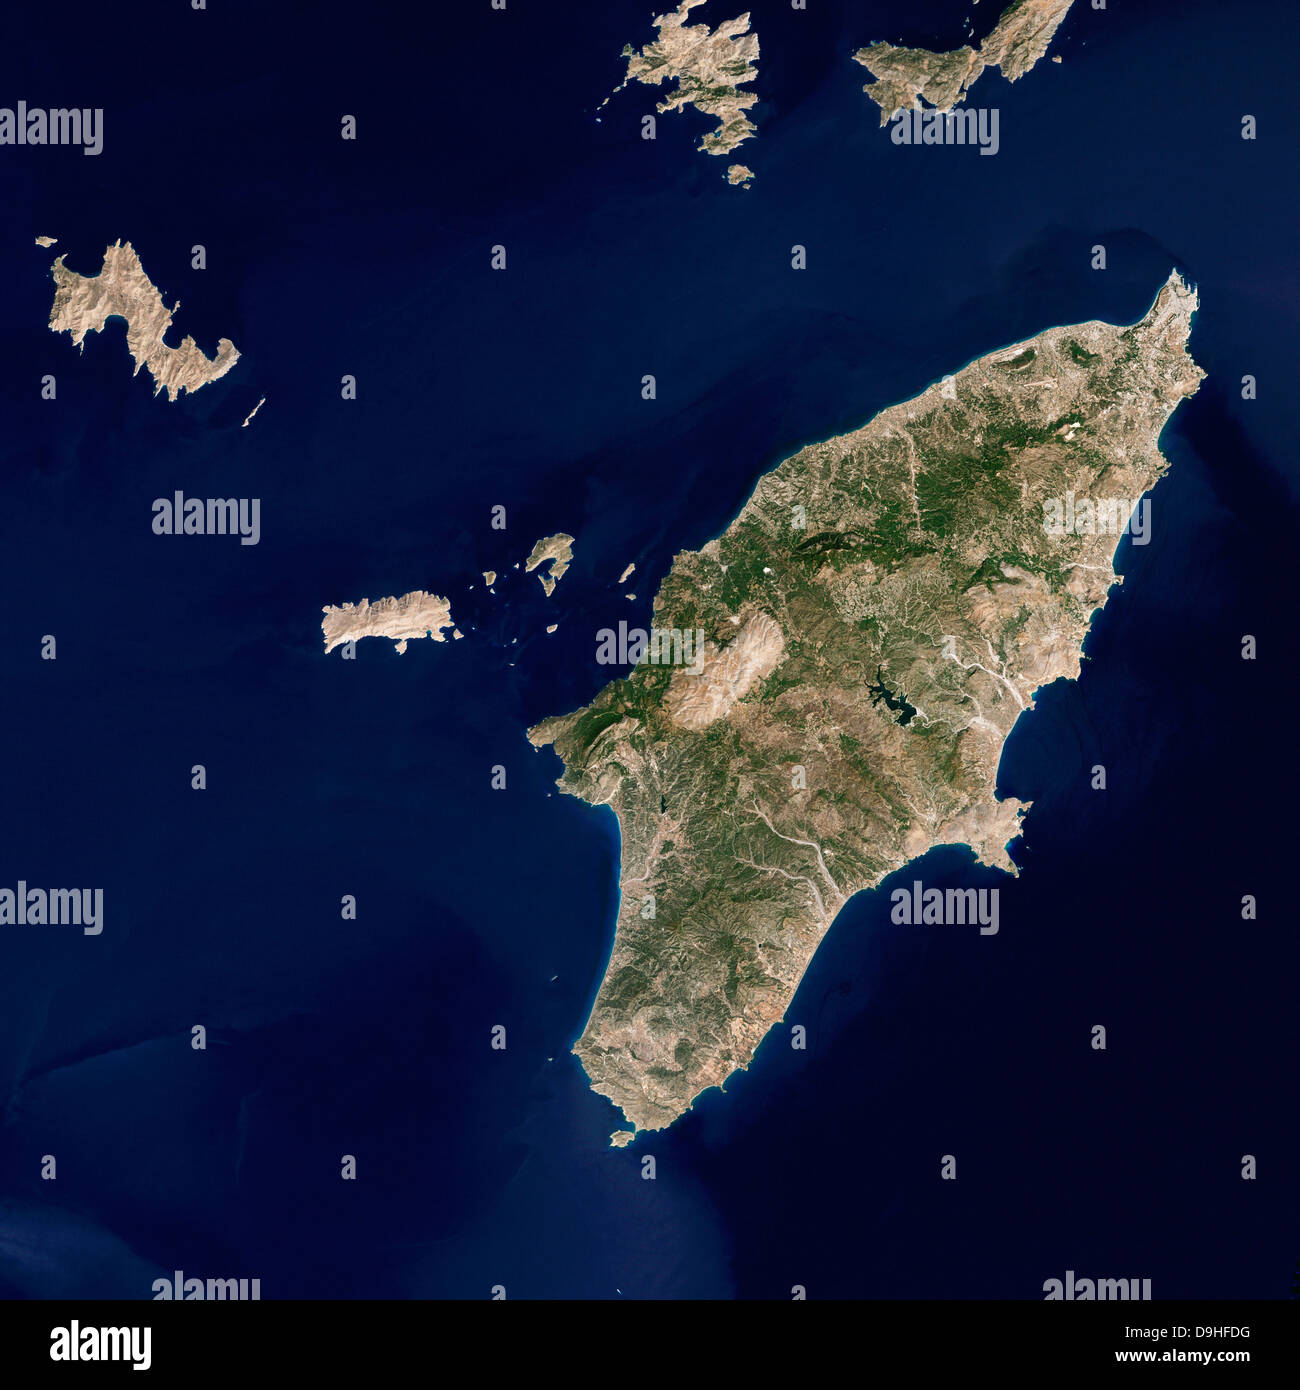 mar-egeo-mapa-y-ubicaci-n-geogr-fica